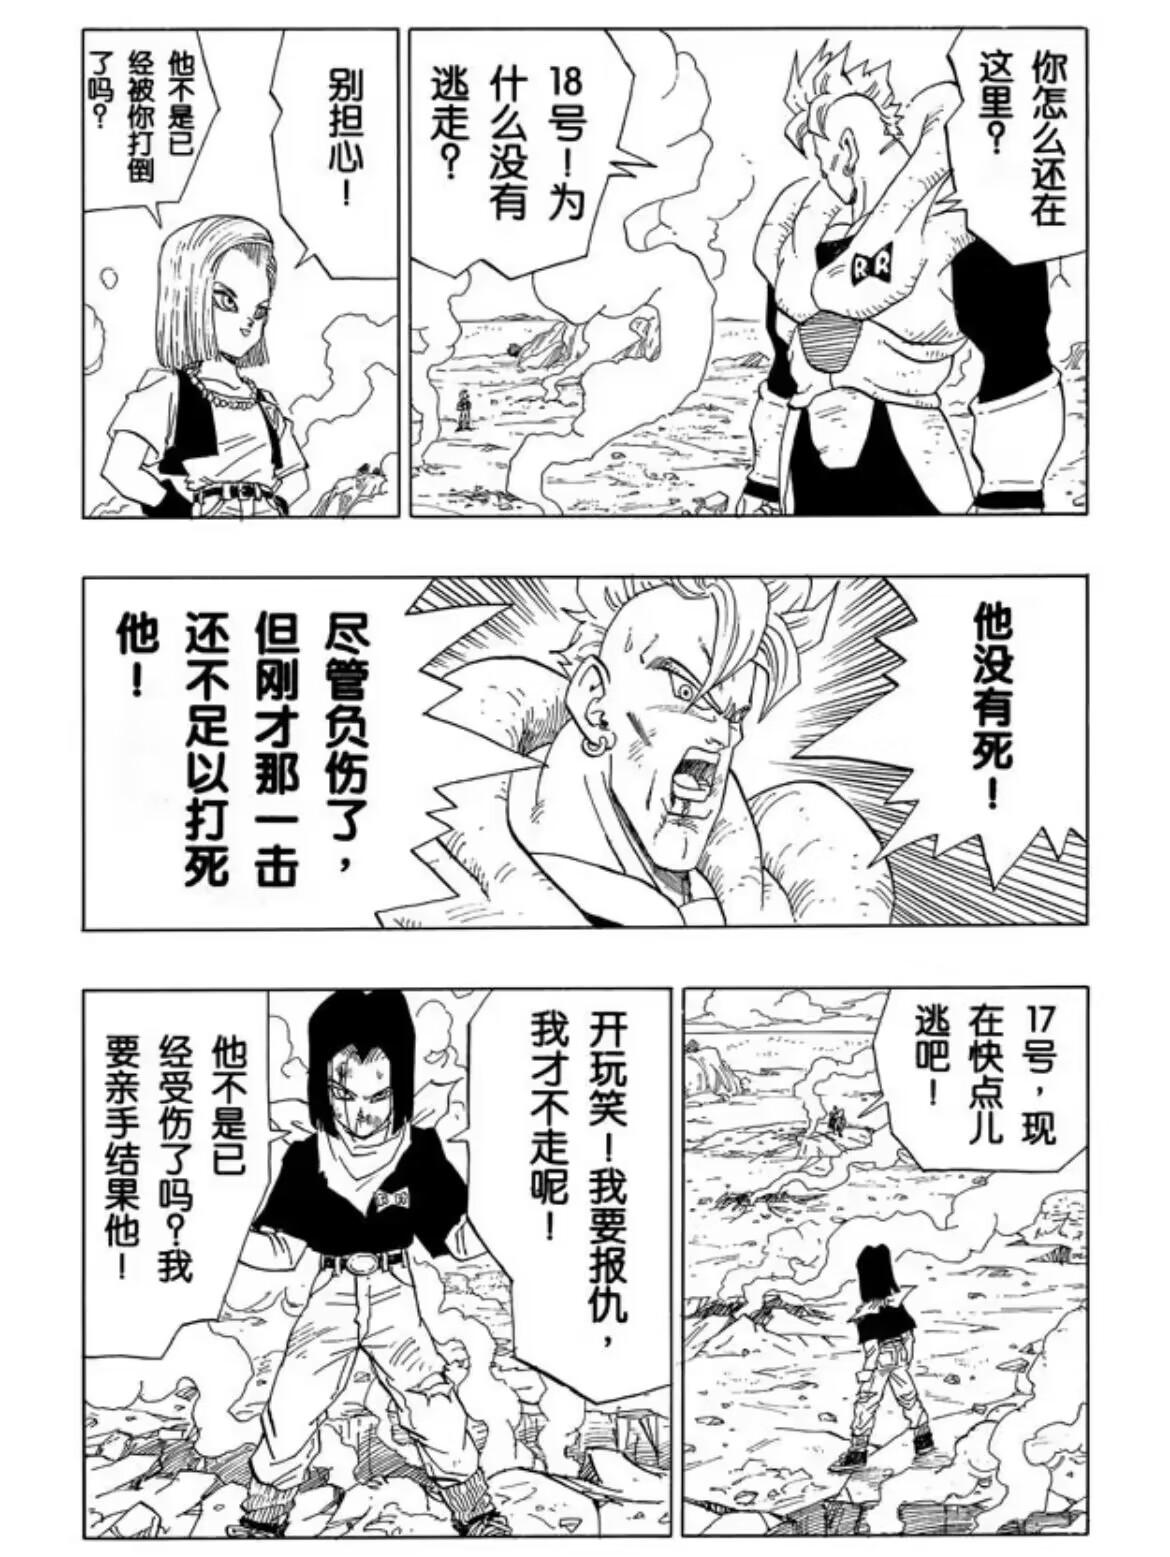 【同人漫画】沙鲁VS邪念波 & 沙鲁获胜的世界 - 哔哩哔哩